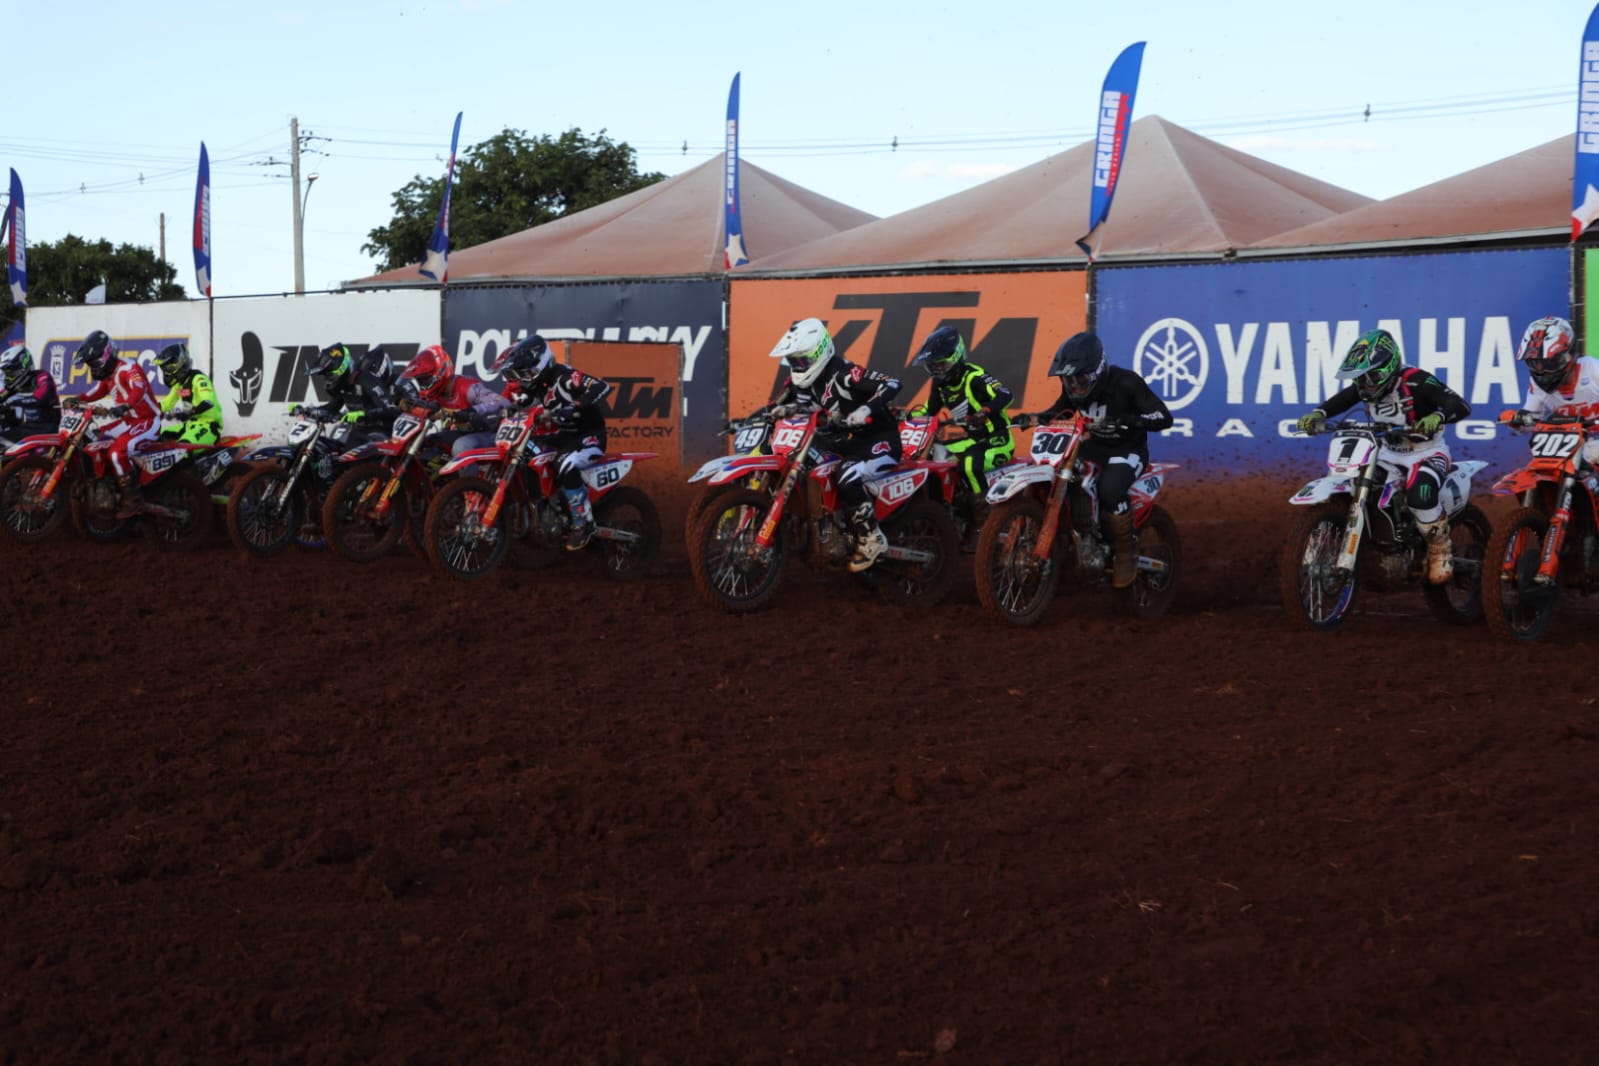 Reconhecida na América Latina, pista de motocross da Capital é palco de Campeonato Brasileiro neste final de semana